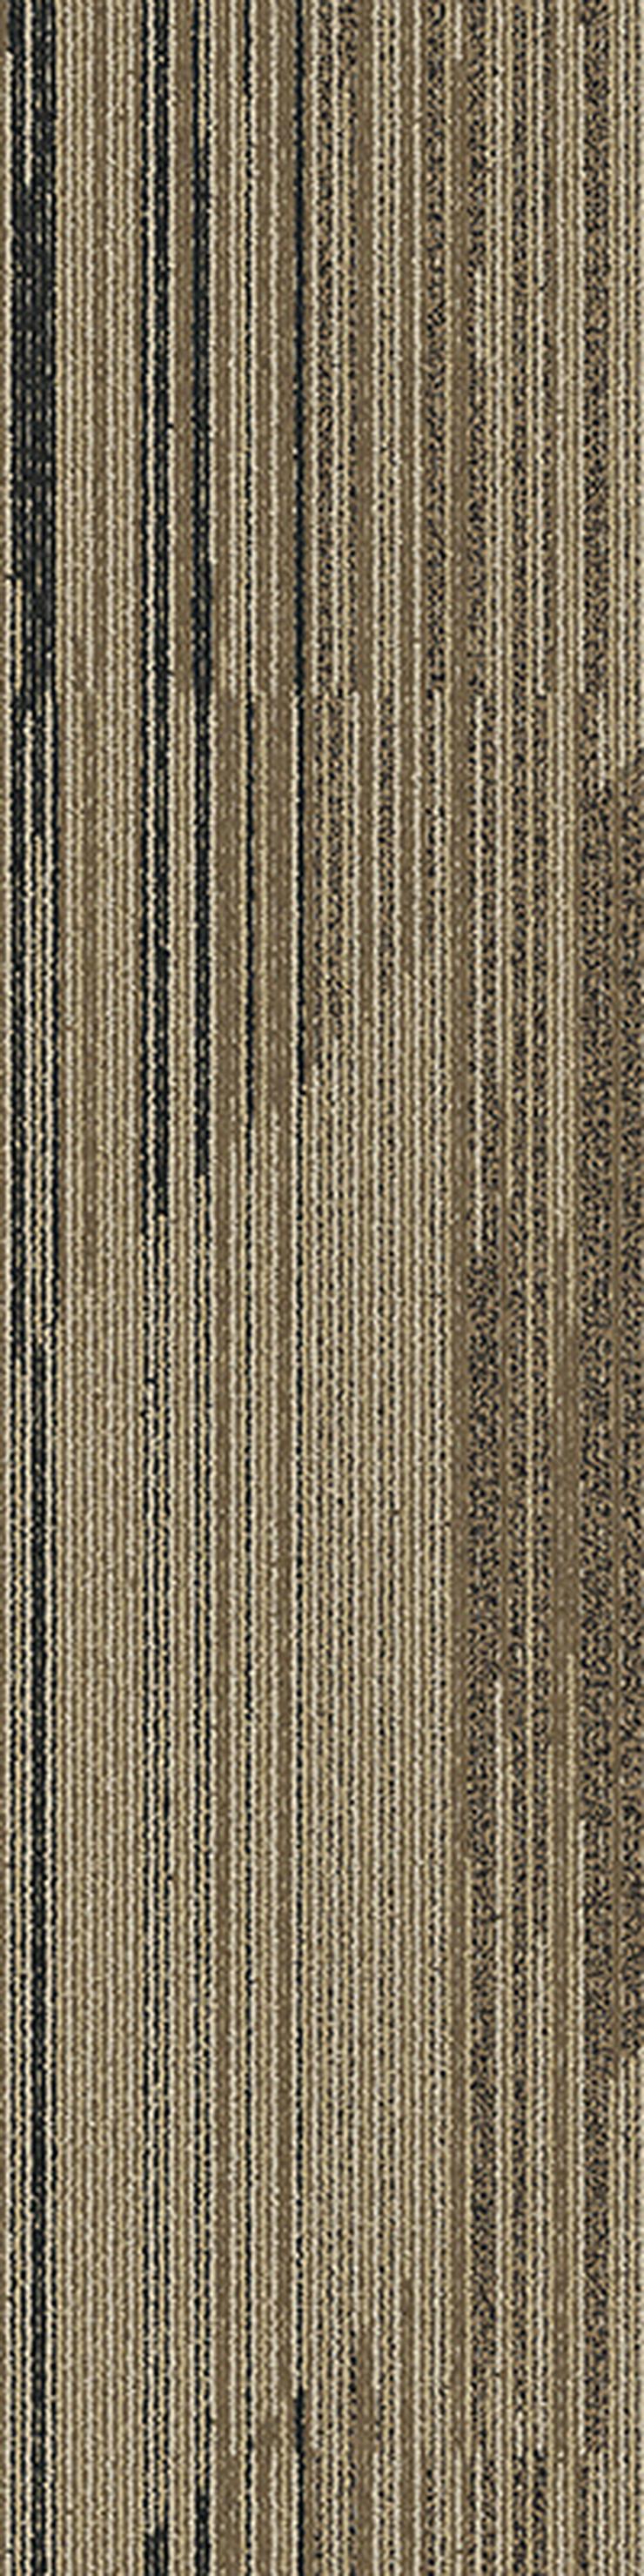 Bild 7: Gestreifte 'Laminat' Teppichfliesen. Bodenbelag in Grau und Braun